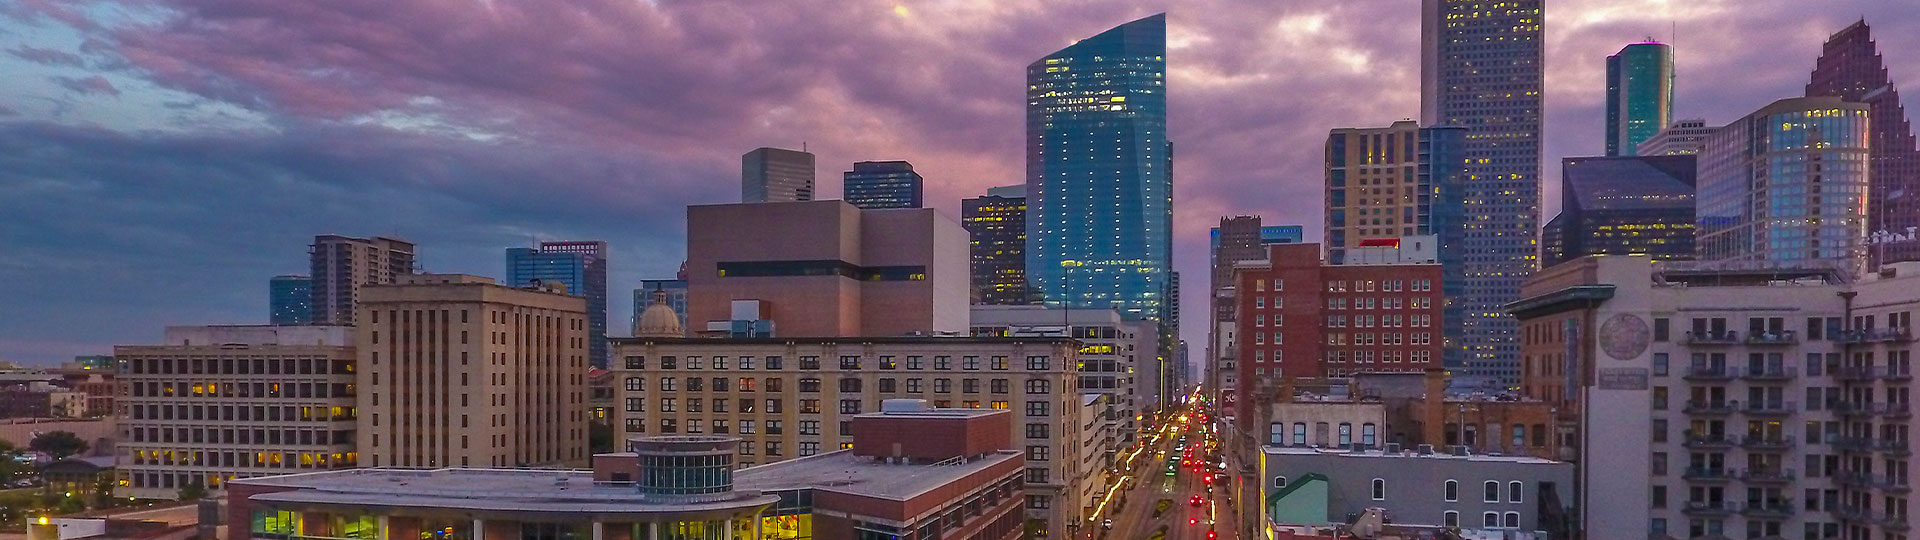 Downtown Houston Skyline.